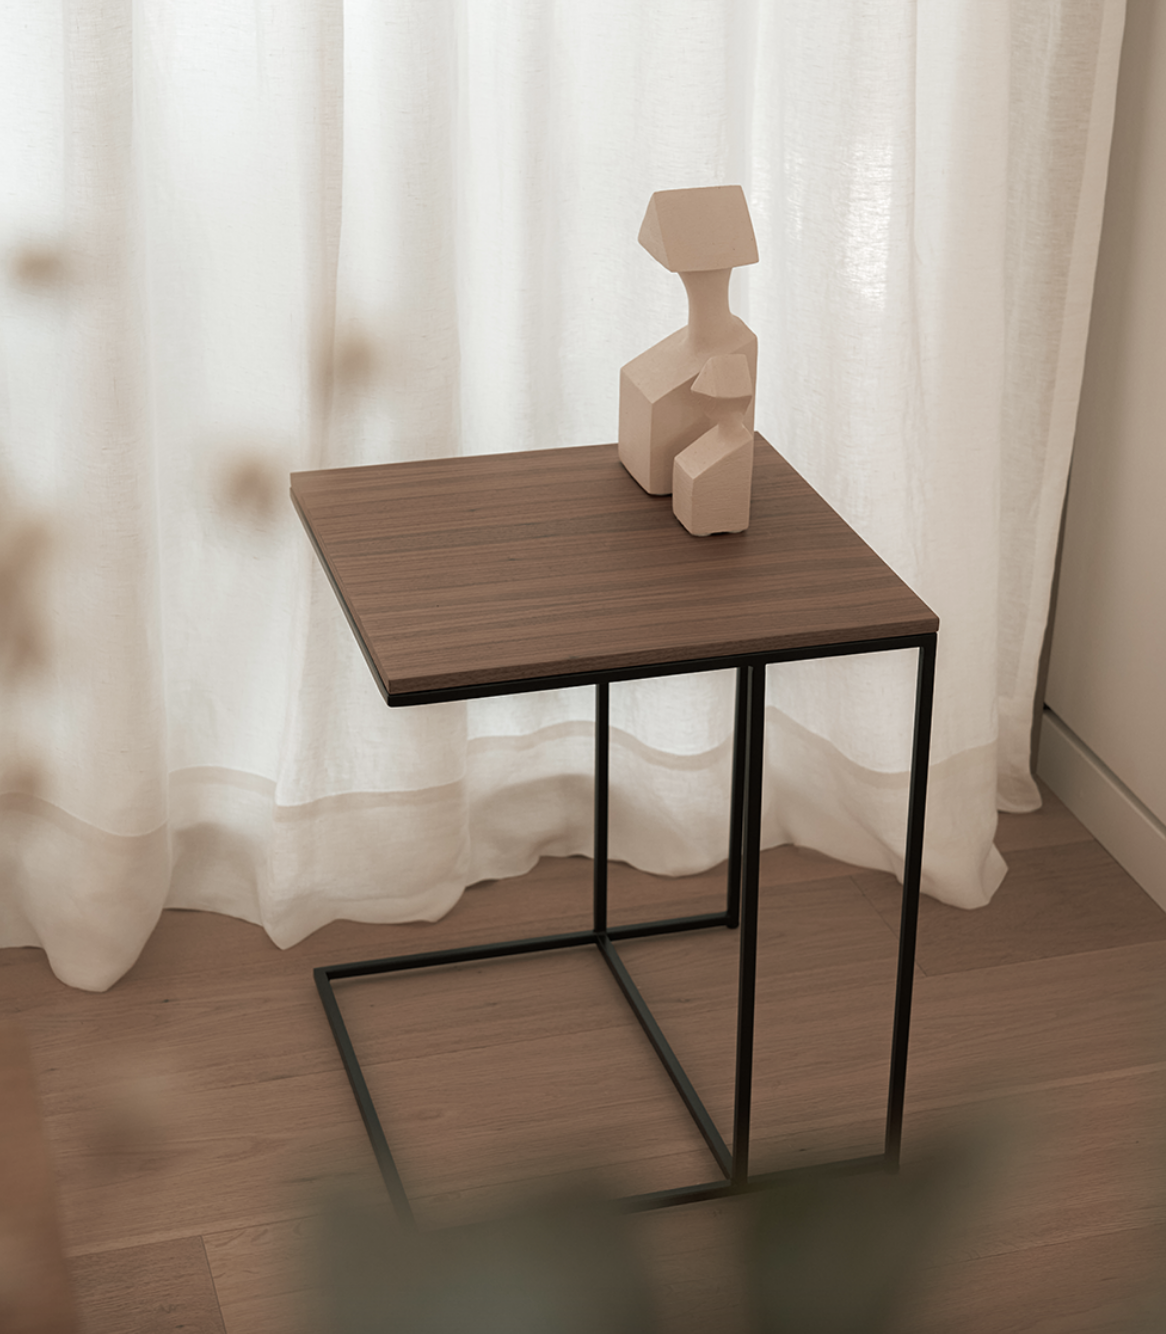 Simplicidad y elegancia se combinan para conformar la serie de mesas Petra. Disponible en dos tamaños y diferentes materiales